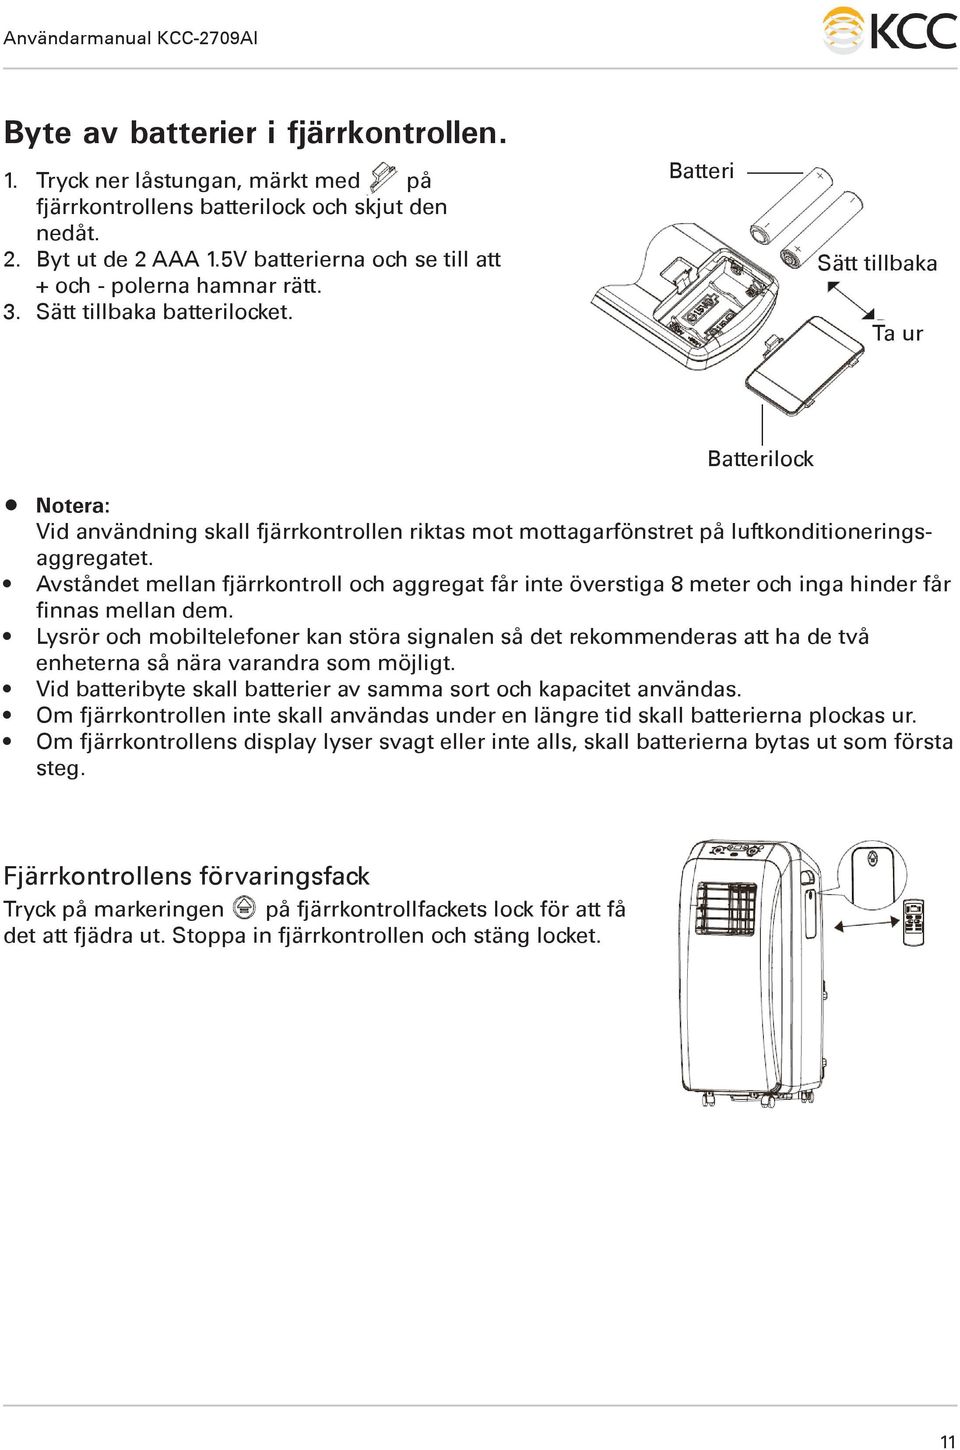 Batteri Sätt tillbaka Ta ur Batterilock Notera: Vid användning skall fjärrkontrollen riktas mot mottagarfönstret på luftkonditioneringsaggregatet.